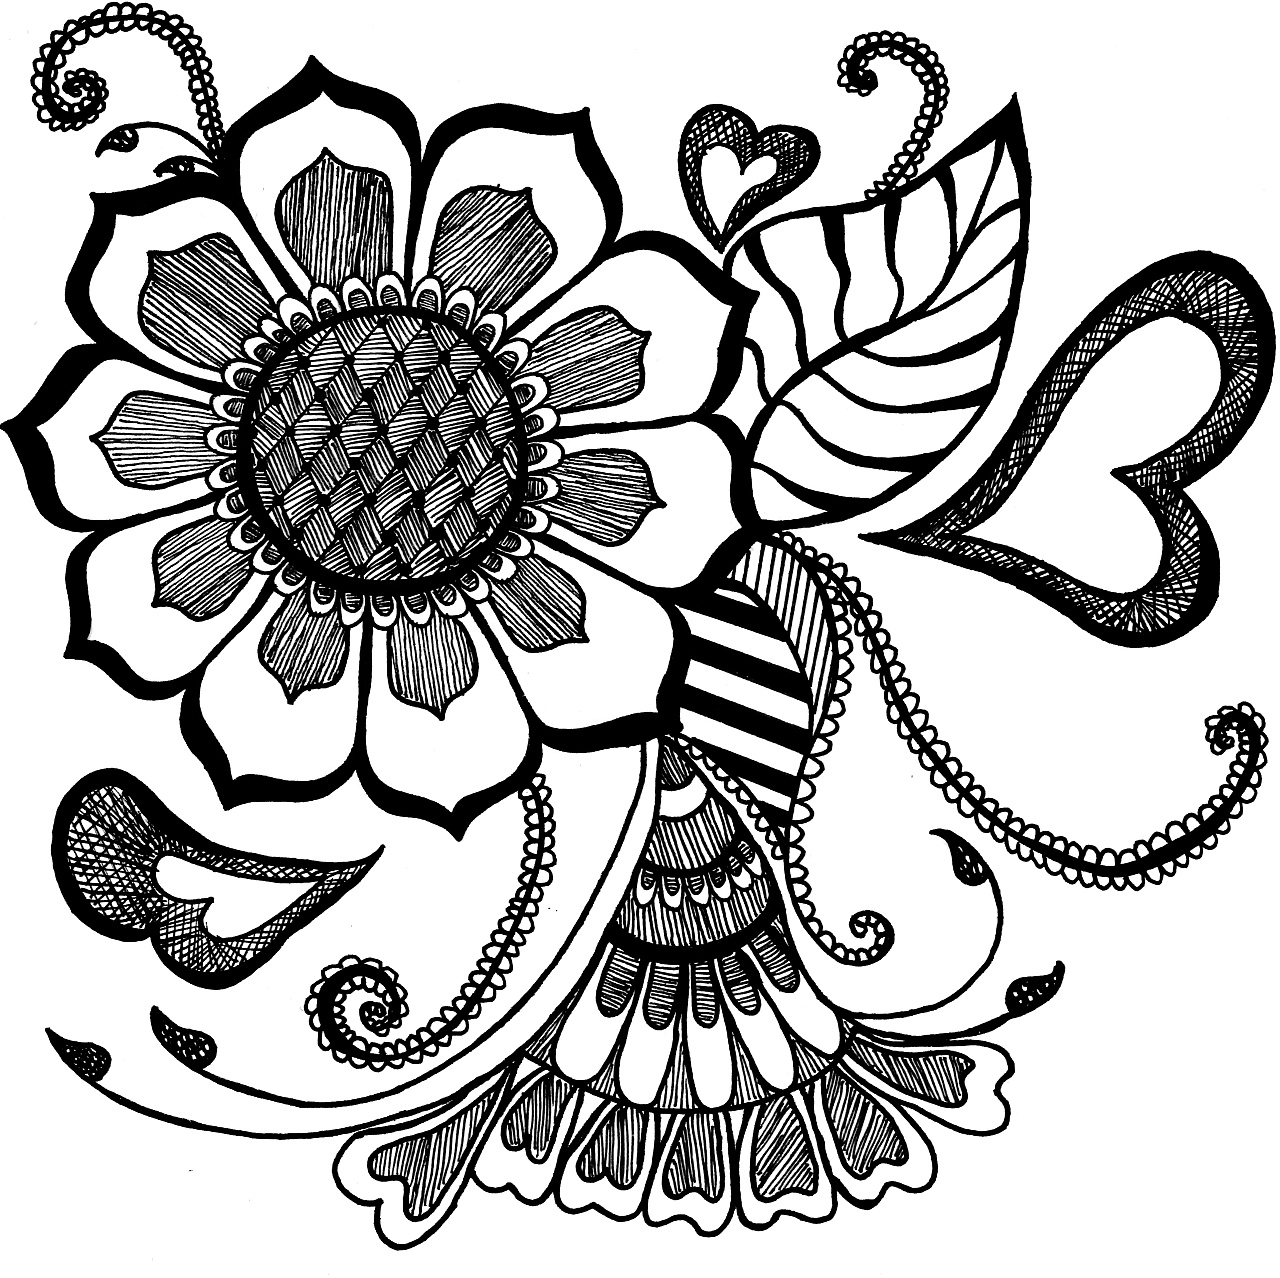 漂亮的艺术花卉图案印花纹理PS笔刷下载 : PS笔刷吧-笔刷免费下载